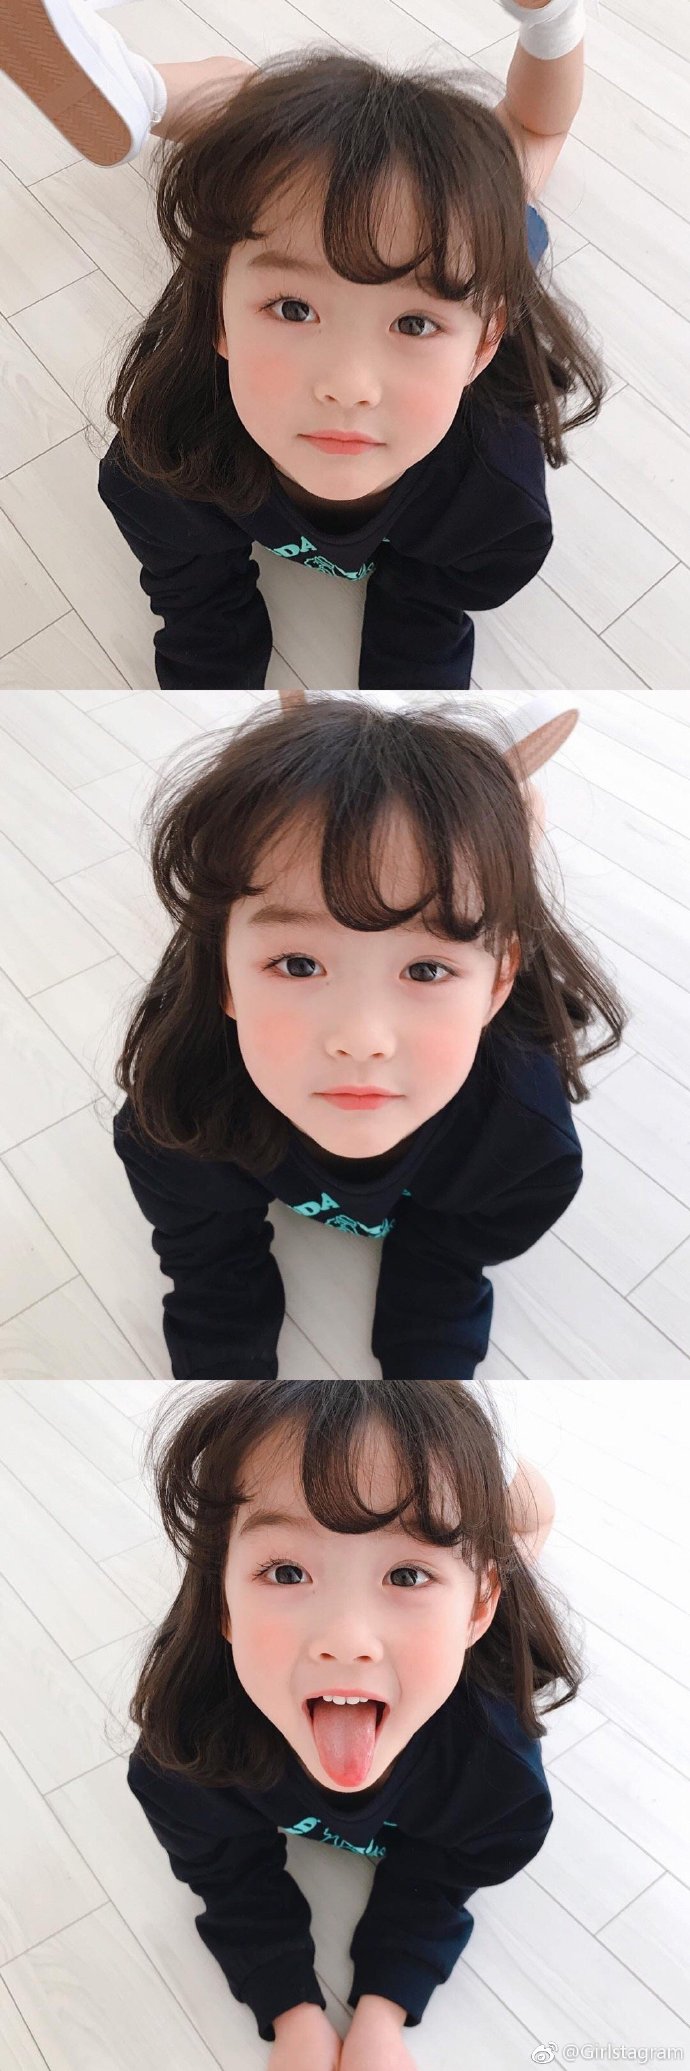 超萌超嫩的韩国小麻豆강혜린
完全是我理想中的的女儿模样啊～
Instagram：hyerin_angji ​​​​